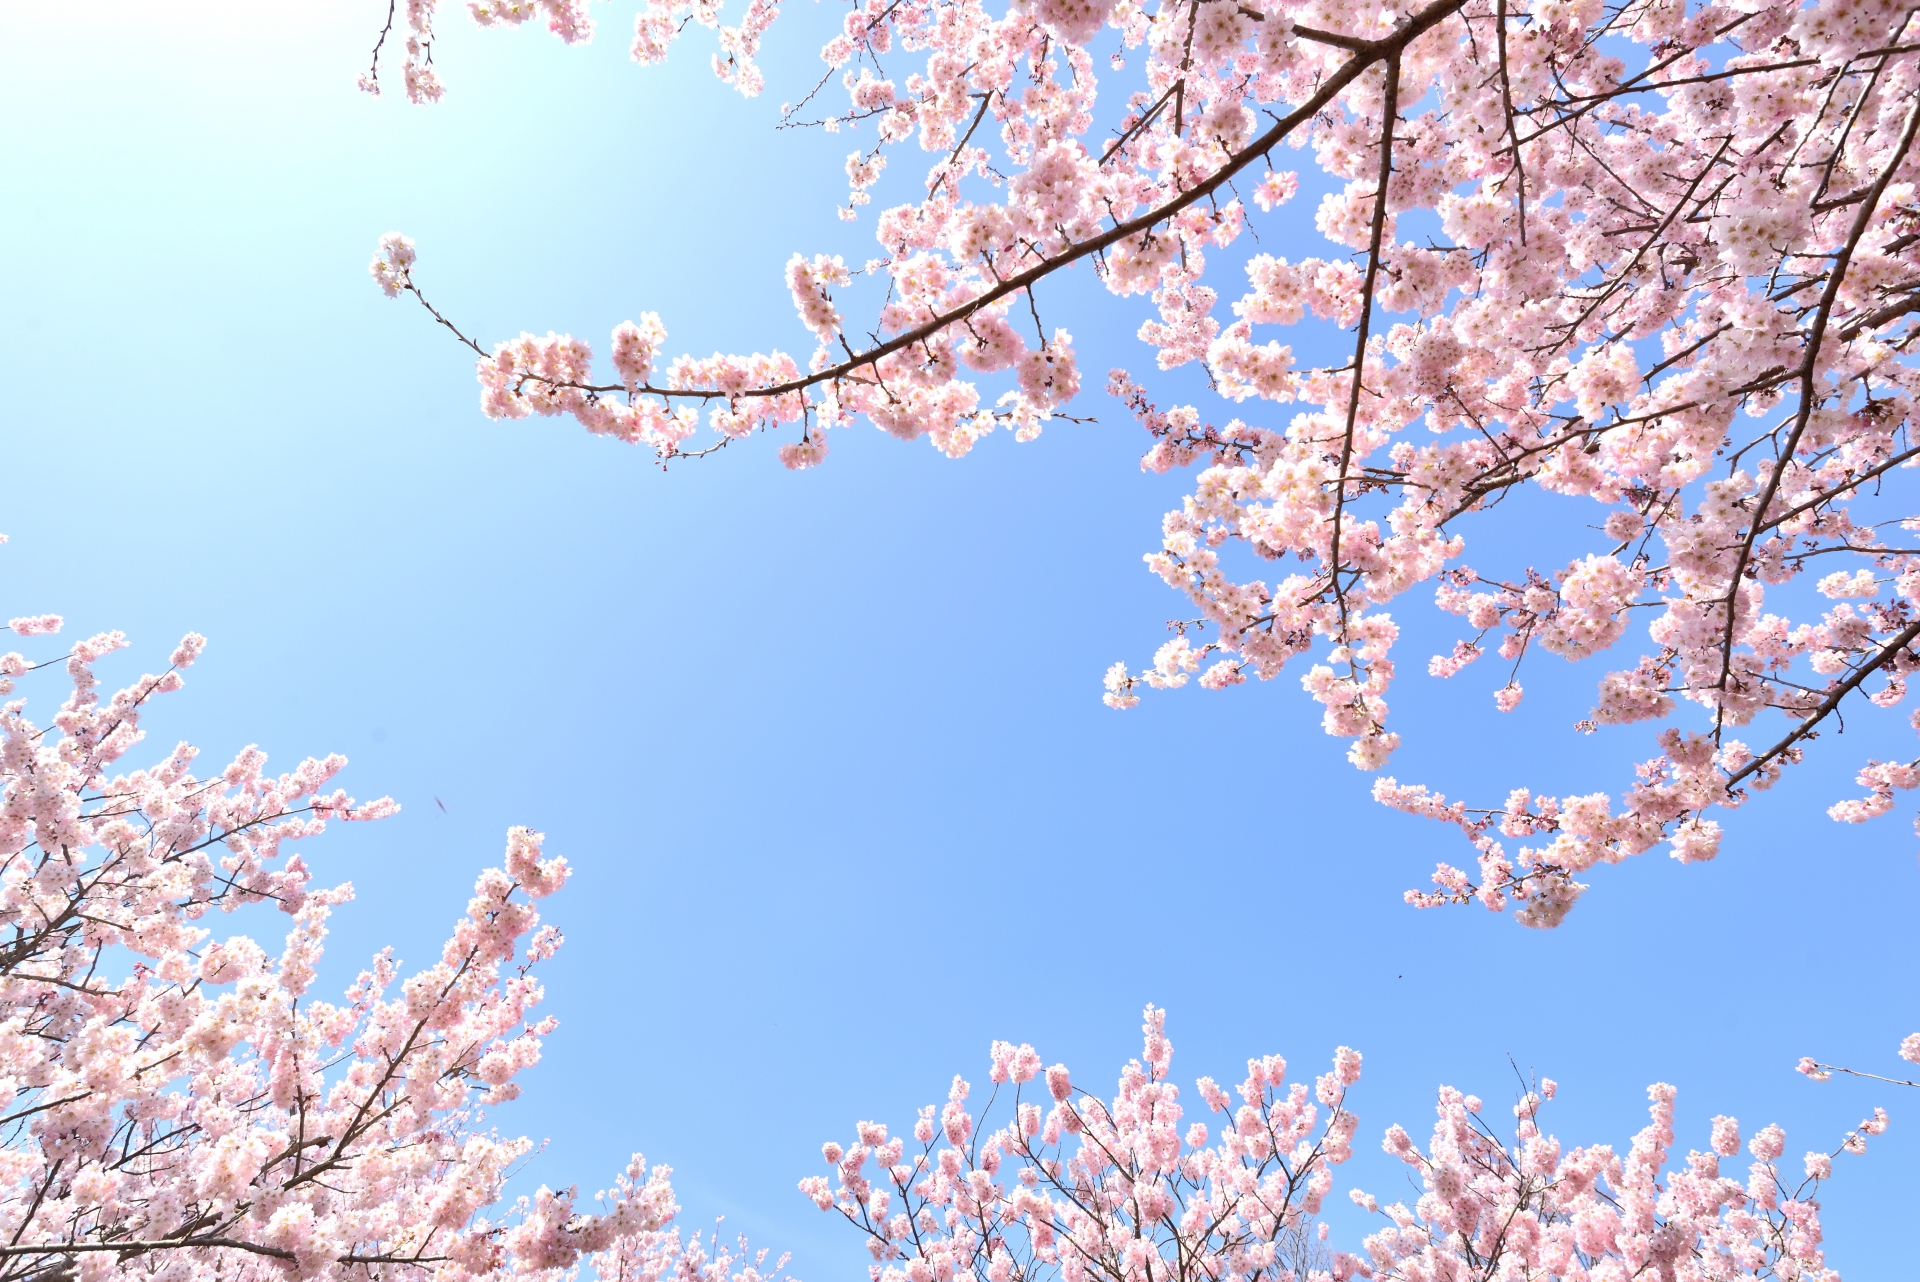 年 日岡山公園 桜の見頃 ライトアップ 駐車場情報も 情報発信ブログサイト Blue Rose